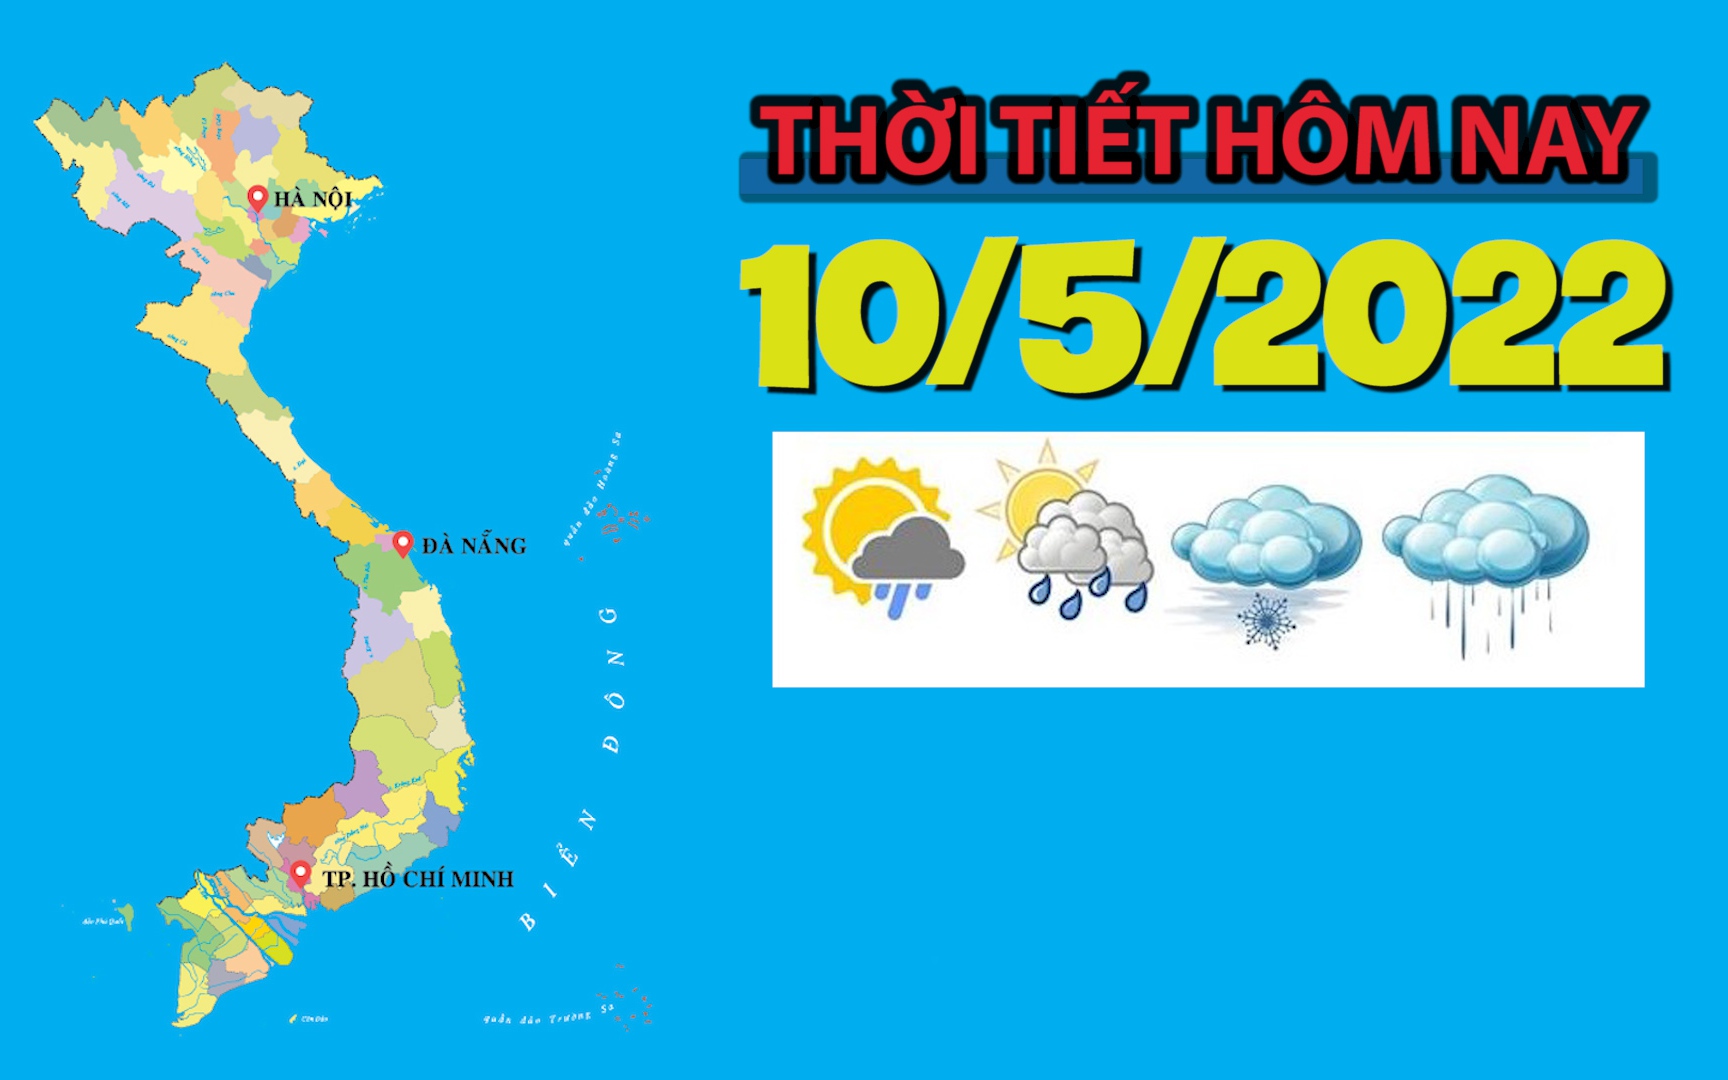 Thời tiết hôm nay 10/3/2022: Hà Nội có lúc có mưa rào và dông